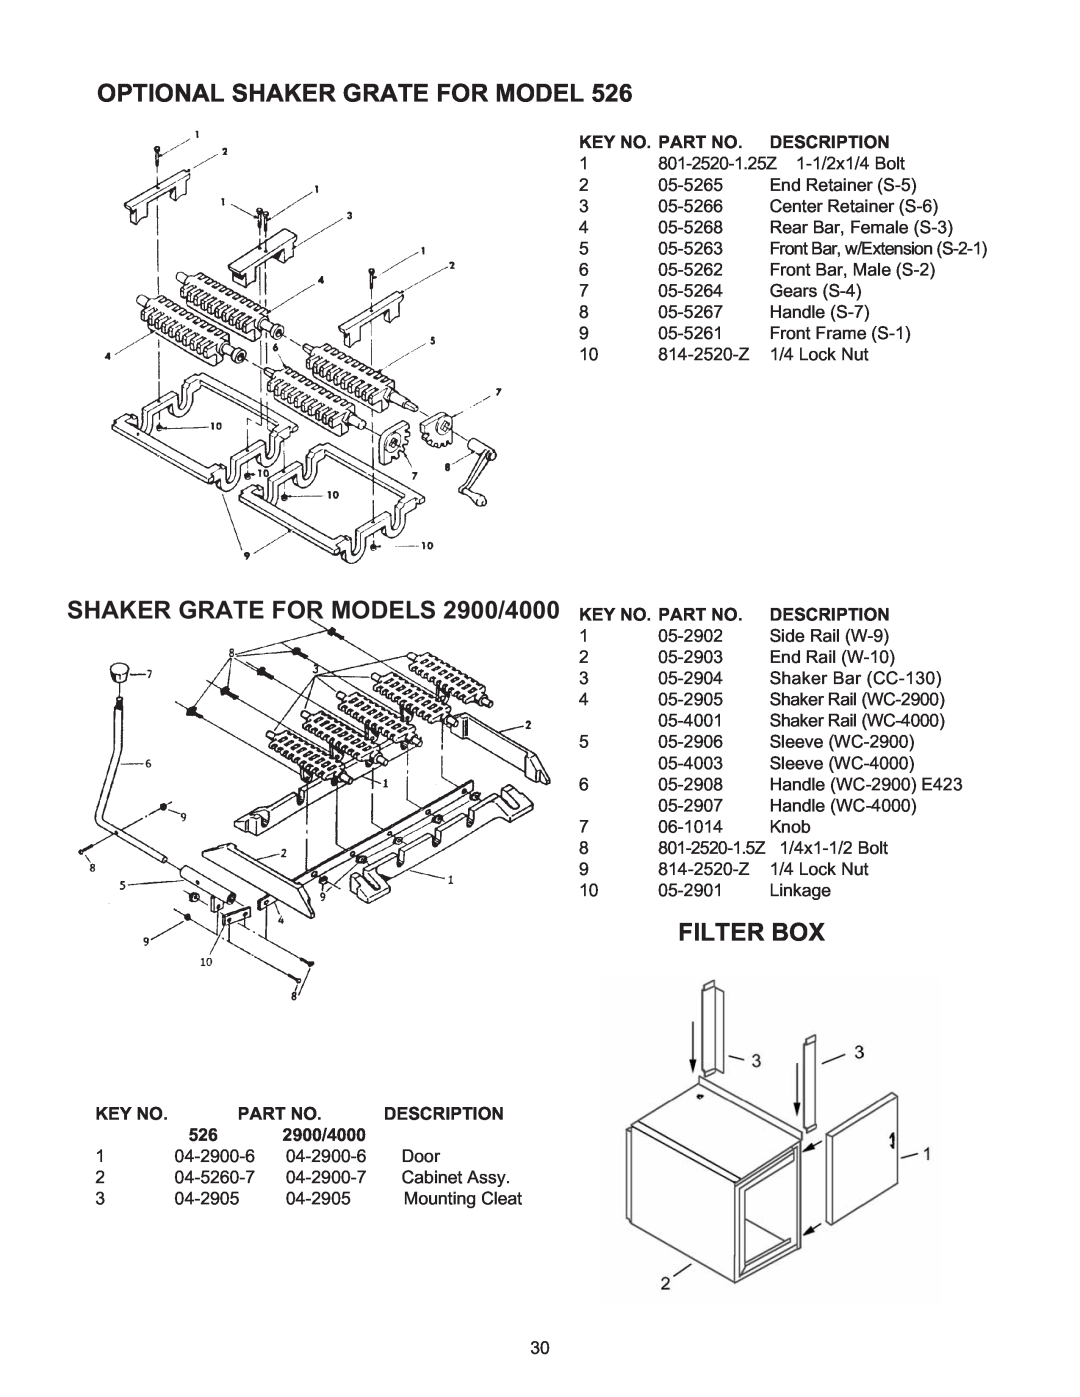 Meyer 526 Optional Shaker Grate For Model, SHAKER GRATE FOR MODELS 2900/4000, Filter Box, Key No. Part No. Description 